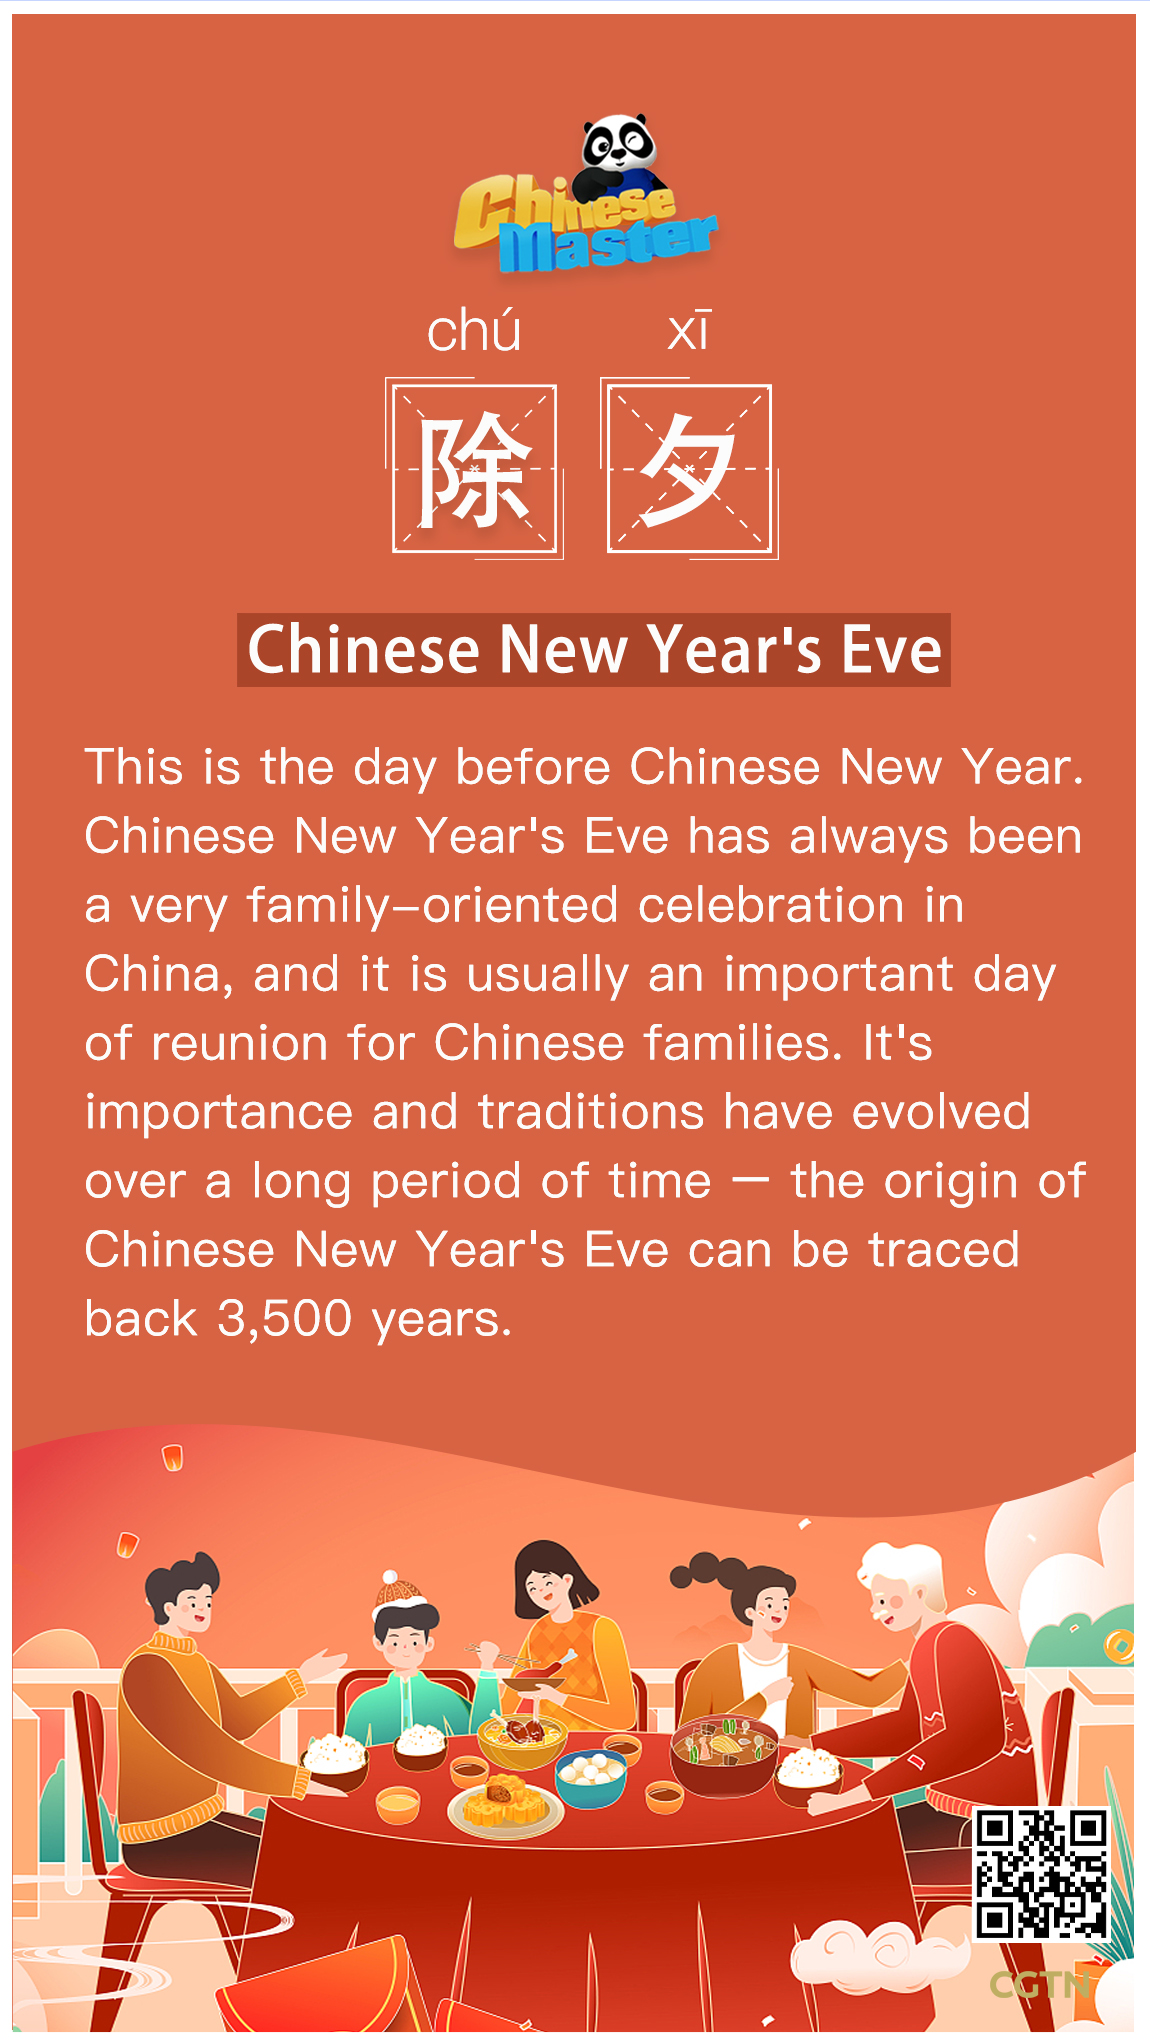 除夕 Chinese New Year's Eve - CGTN